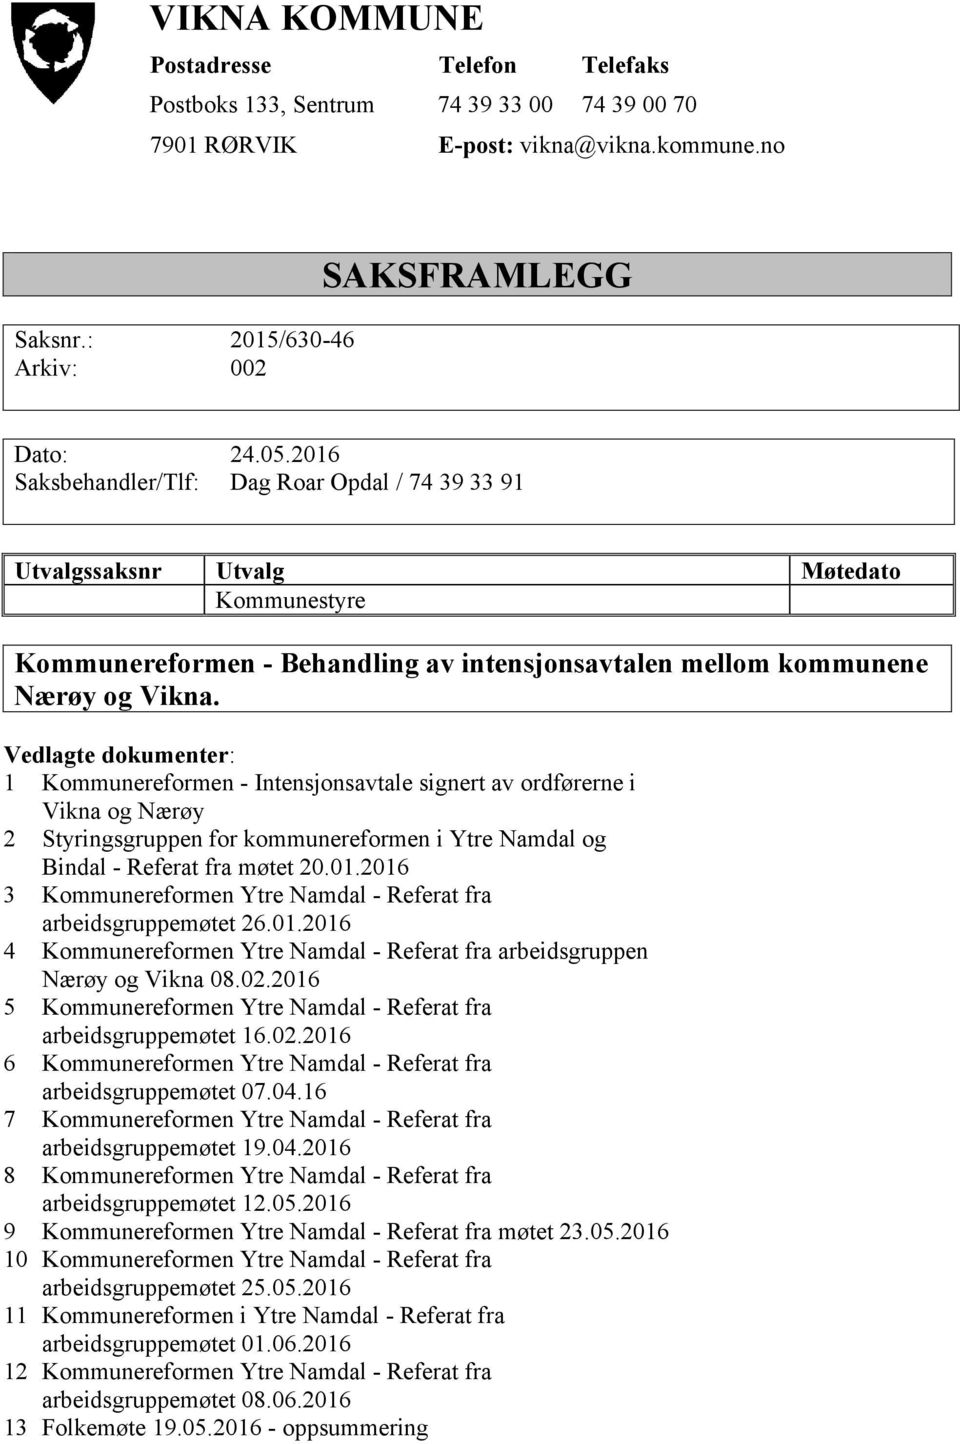 Vedlagte dokumenter: 1 Kommunereformen - Intensjonsavtale signert av ordførerne i Vikna og Nærøy 2 Styringsgruppen for kommunereformen i Ytre Namdal og Bindal - Referat fra møtet 20.01.